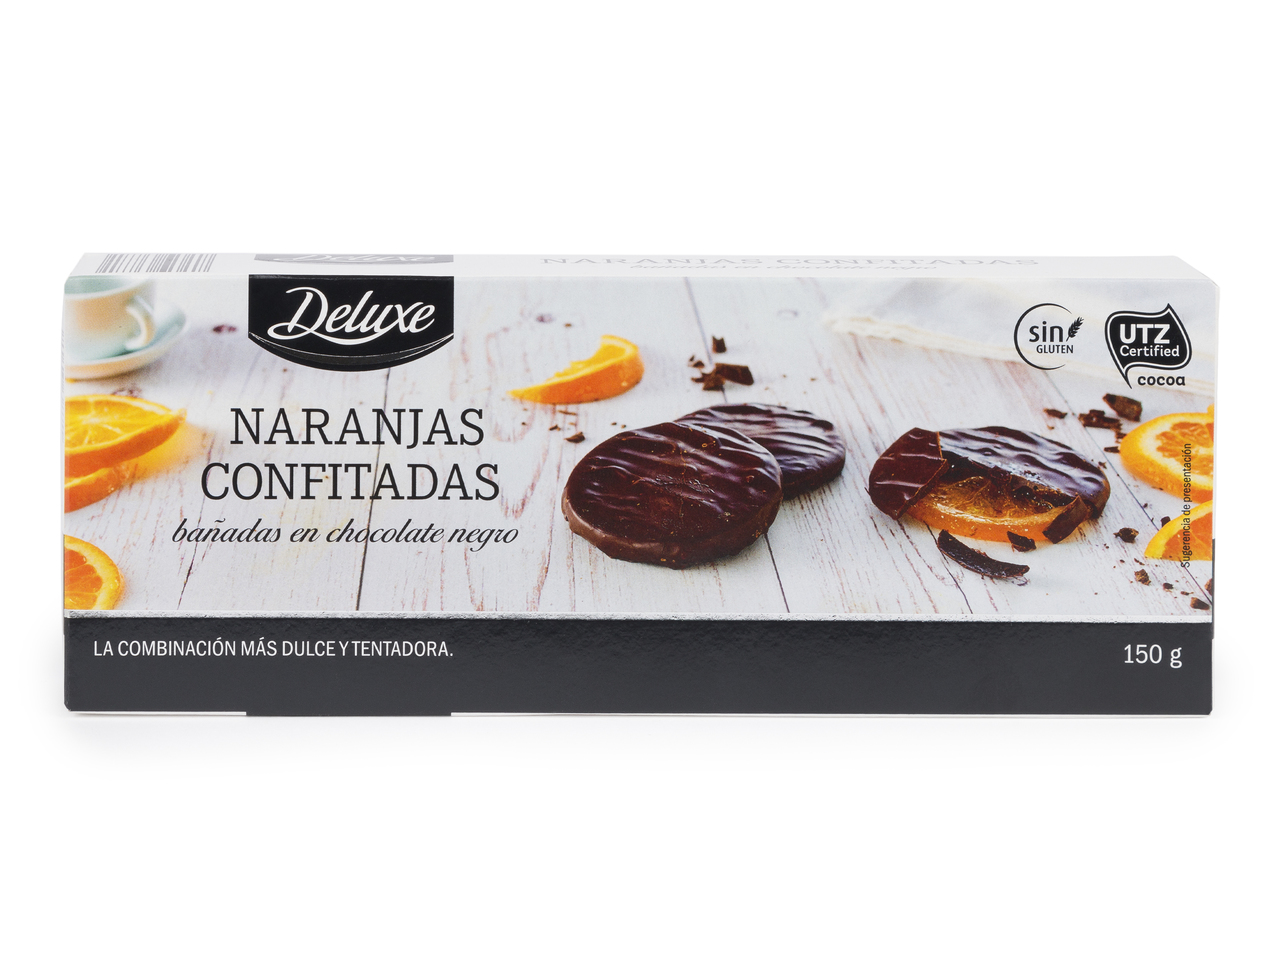 "Deluxe" Naranjas confitadas bañadas en chocolate negro